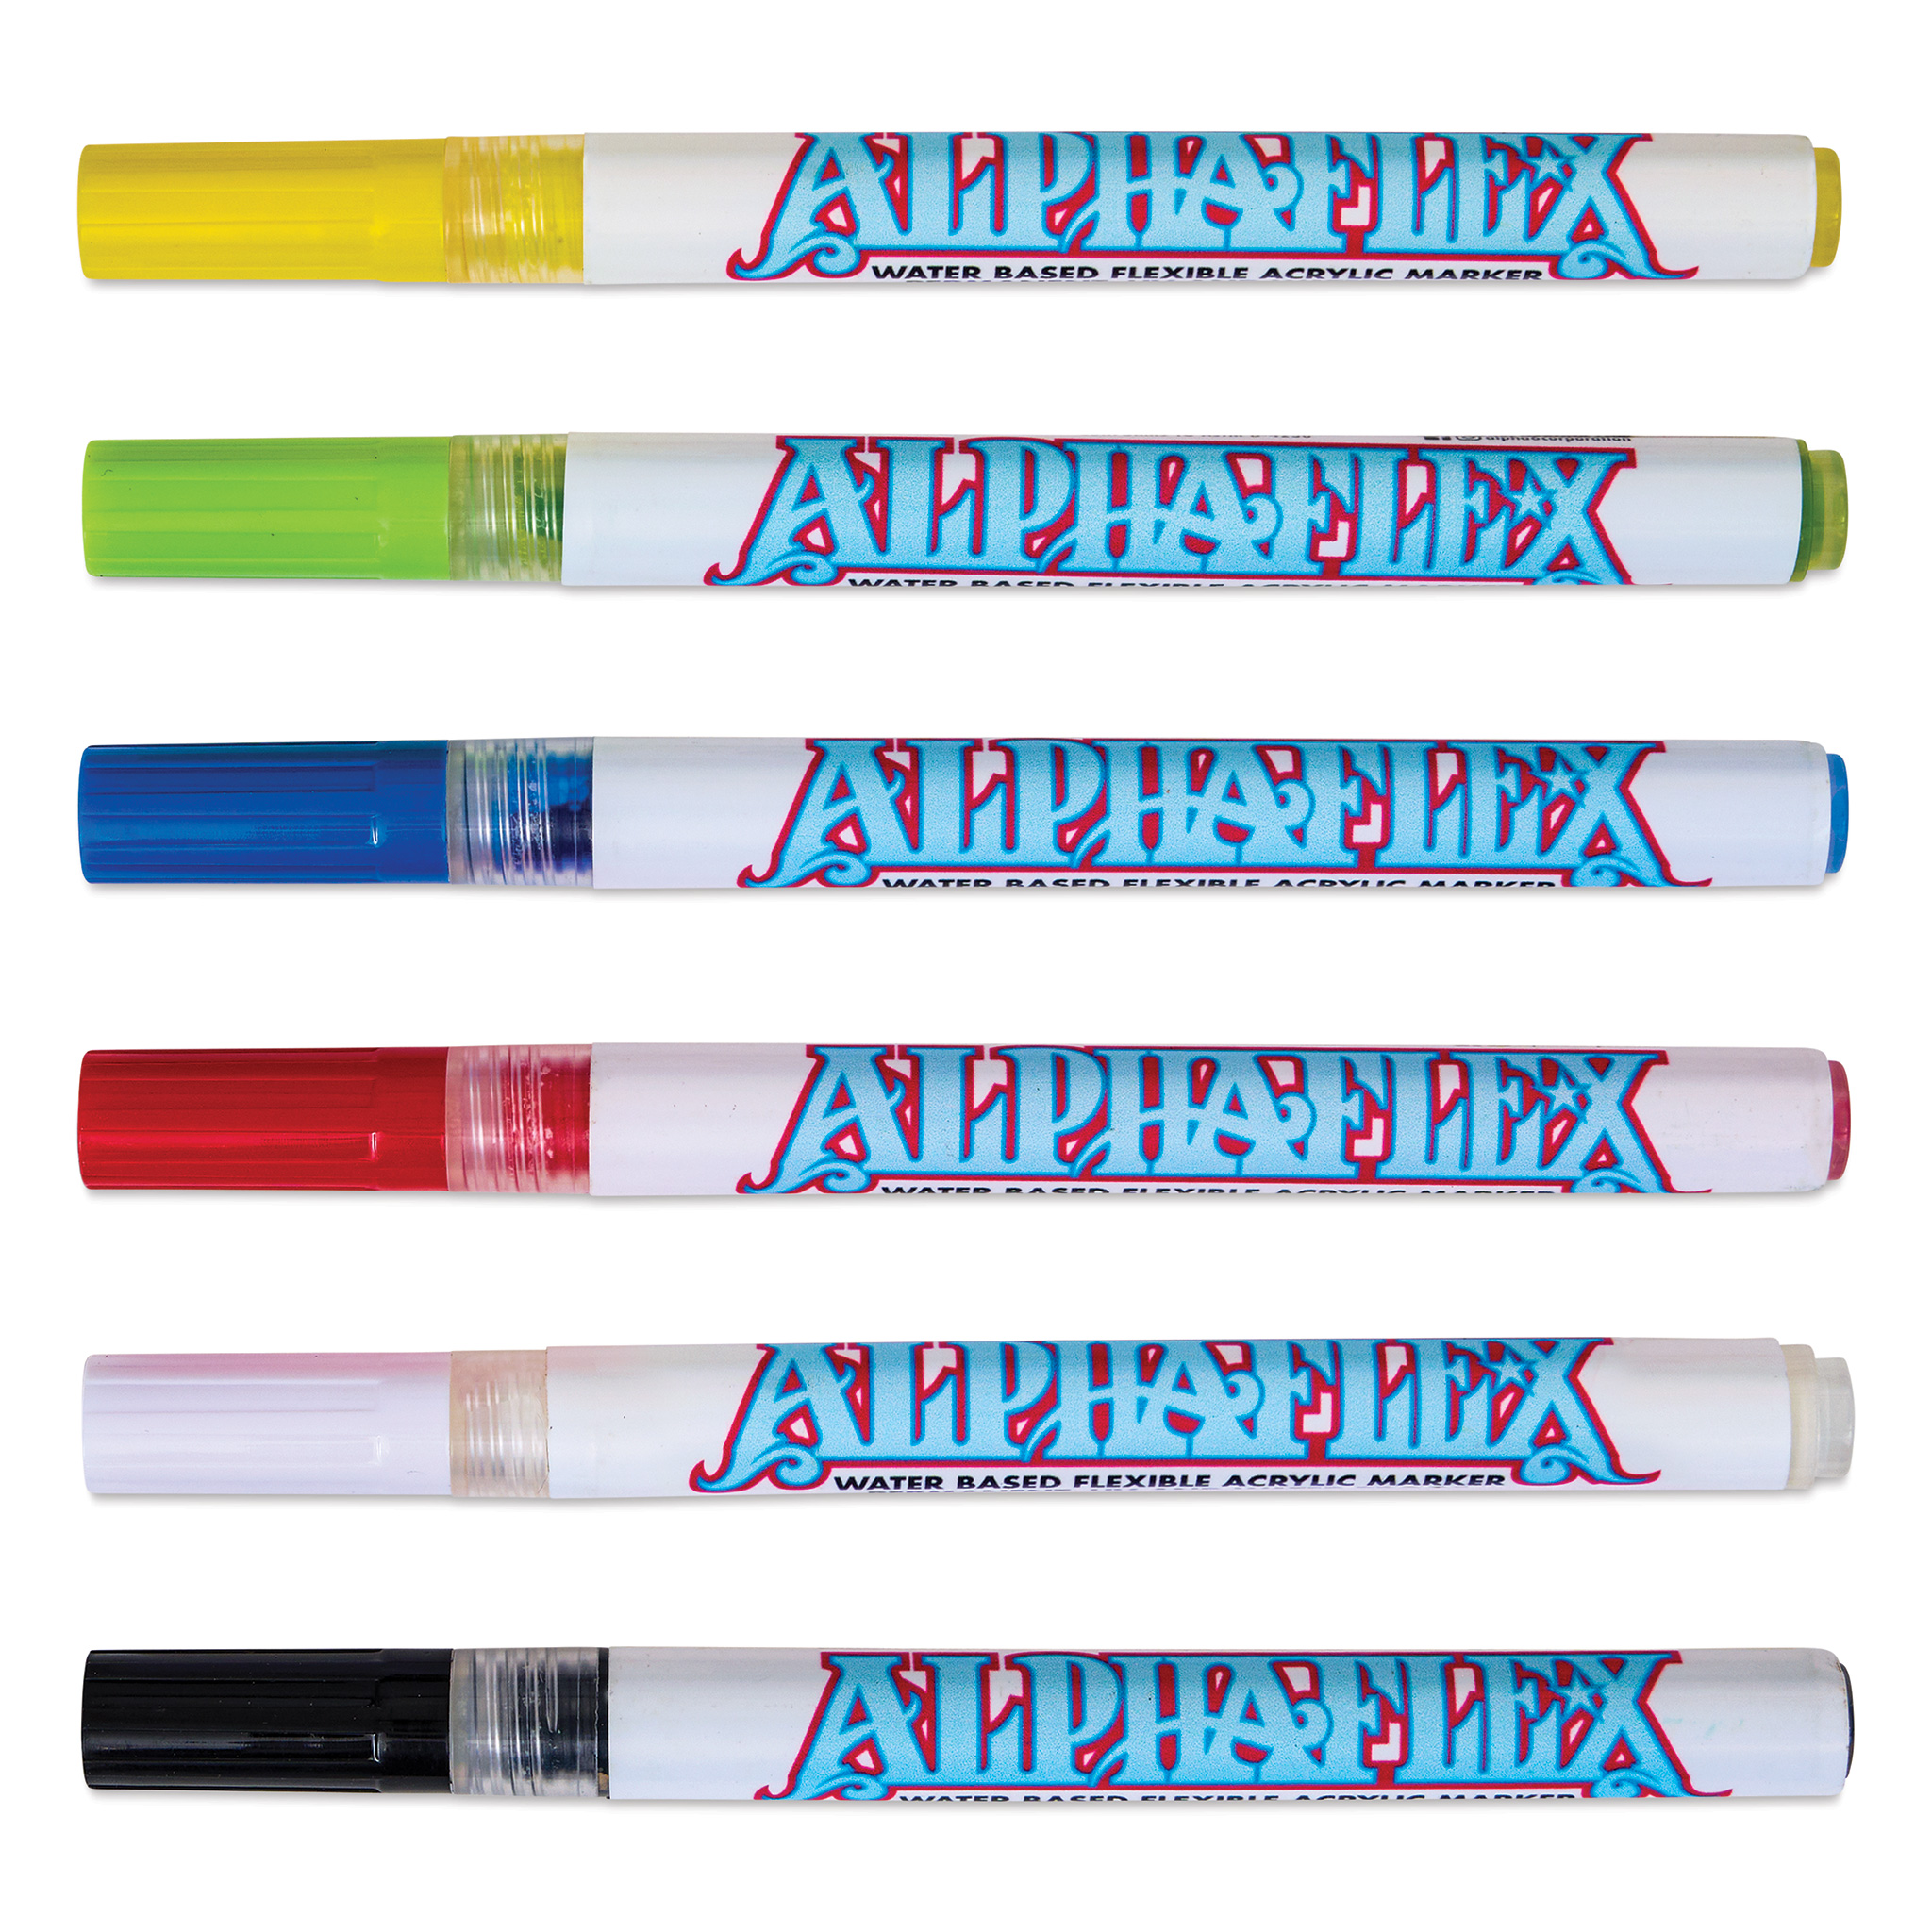 AlphaFlex Basic Set - Flexible textile and leather paint ⋆ Alpha 6  Corporation